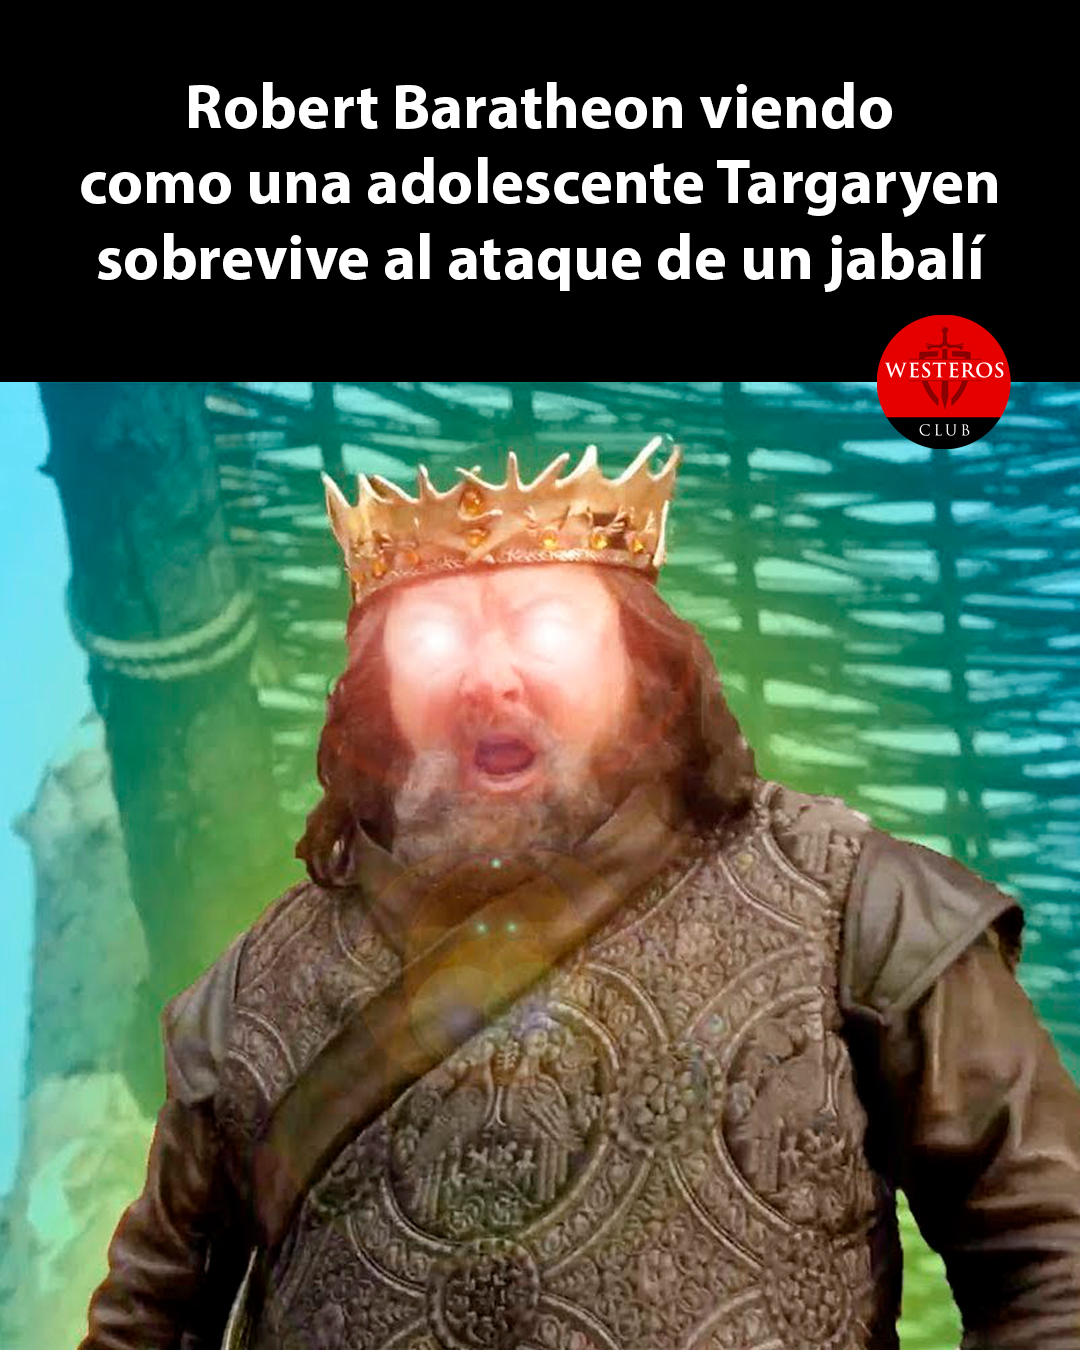 Robert Baratheon viendo como una adolescente Targaryen sobrevive al ataque de un jabalí